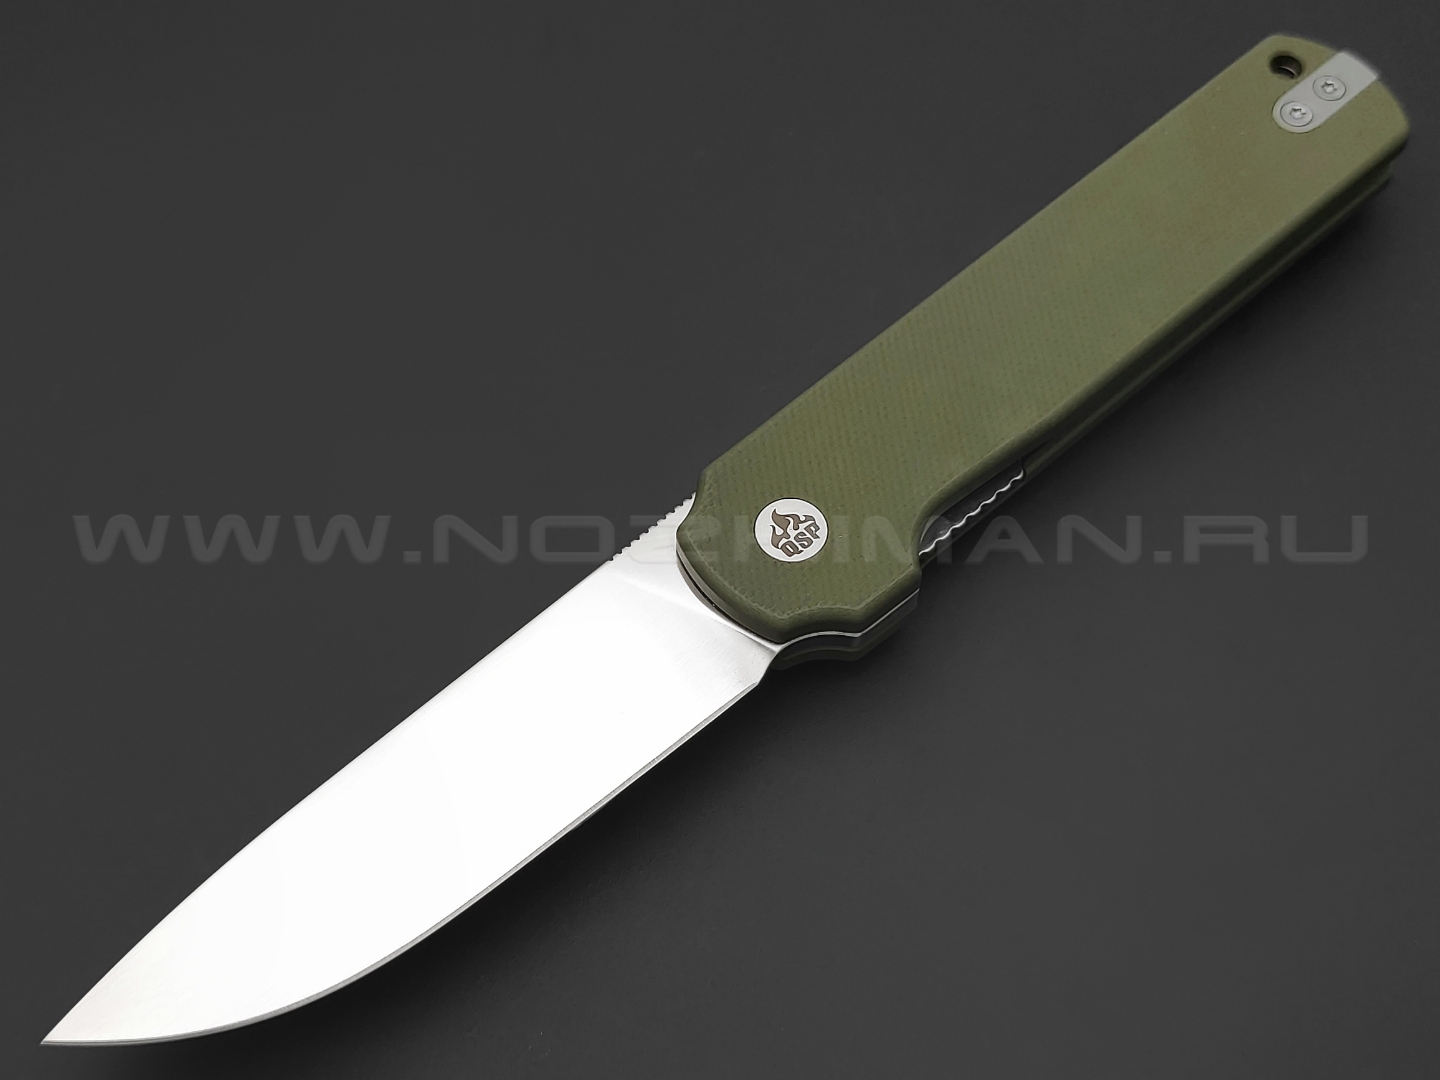 Нож QSP Lark QS144-C сталь 14C28N satin, рукоять G10 green